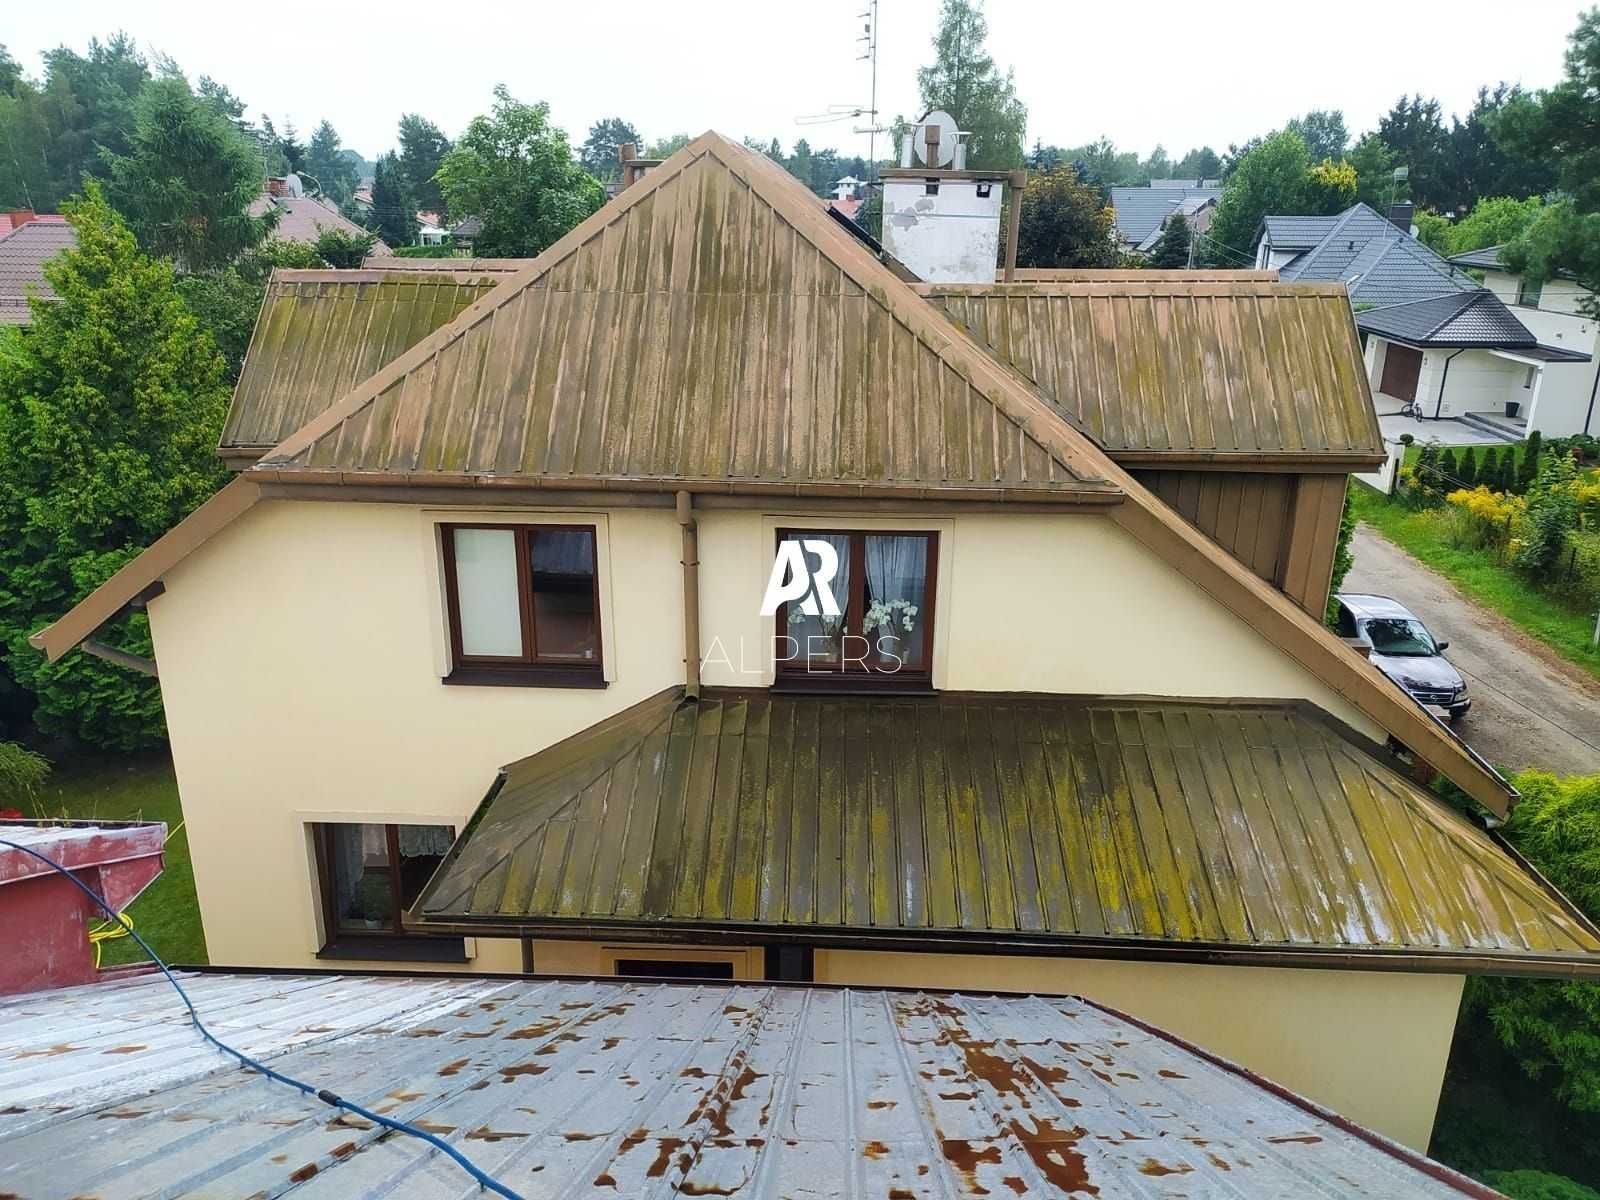 Mycie Malowanie Dachów Elewacji czyszczenie kostki blachy renowacja